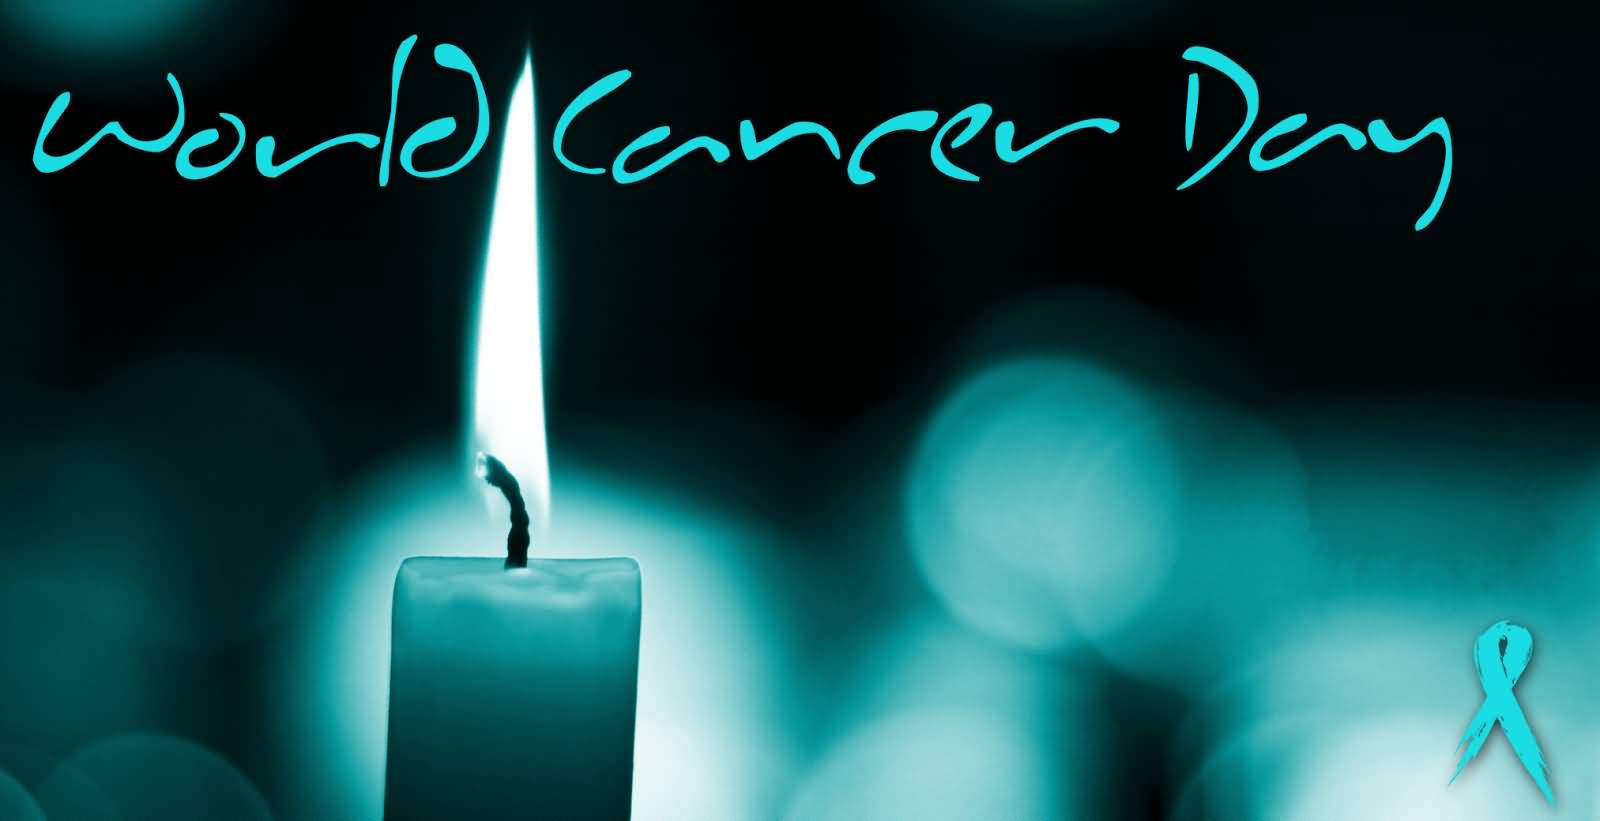 World Cancer Day Burning Candle